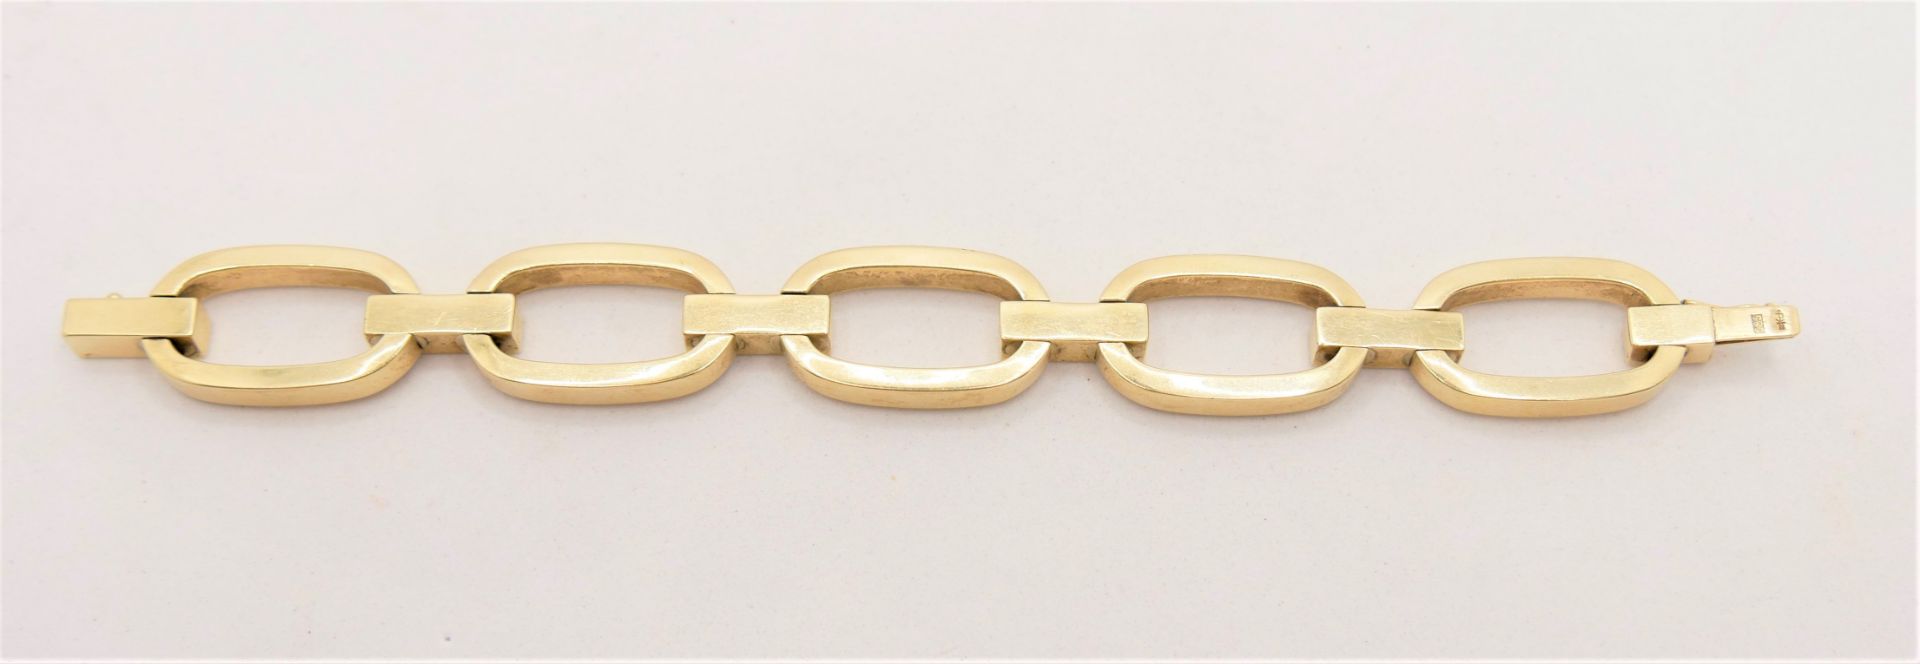 Armband, 585er Gelbgold mit Sicherheitsschließe. Länge ca. 20 cm. Gewicht ca. 28,5 gr. - Bild 5 aus 6